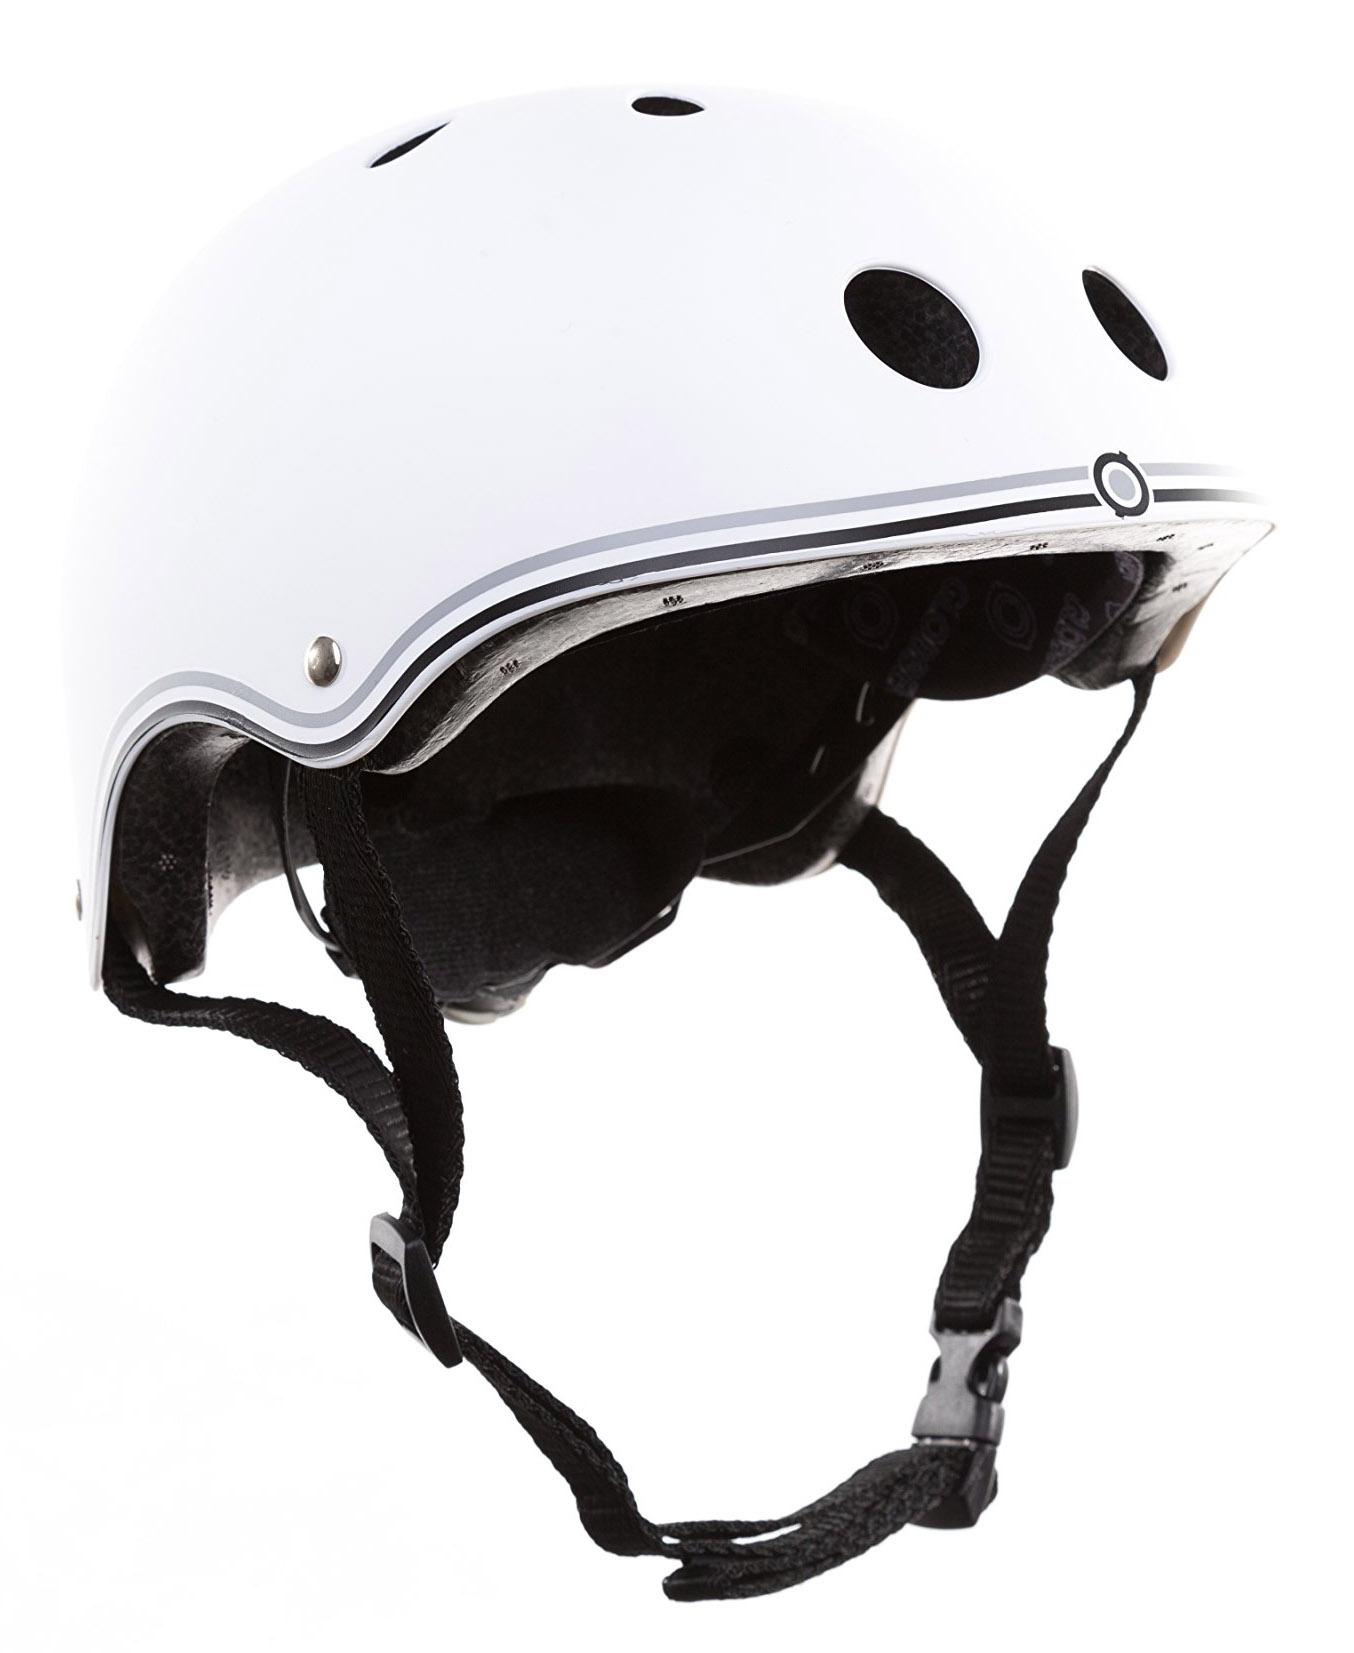  Велошлем Globber Helmet Junior 2020